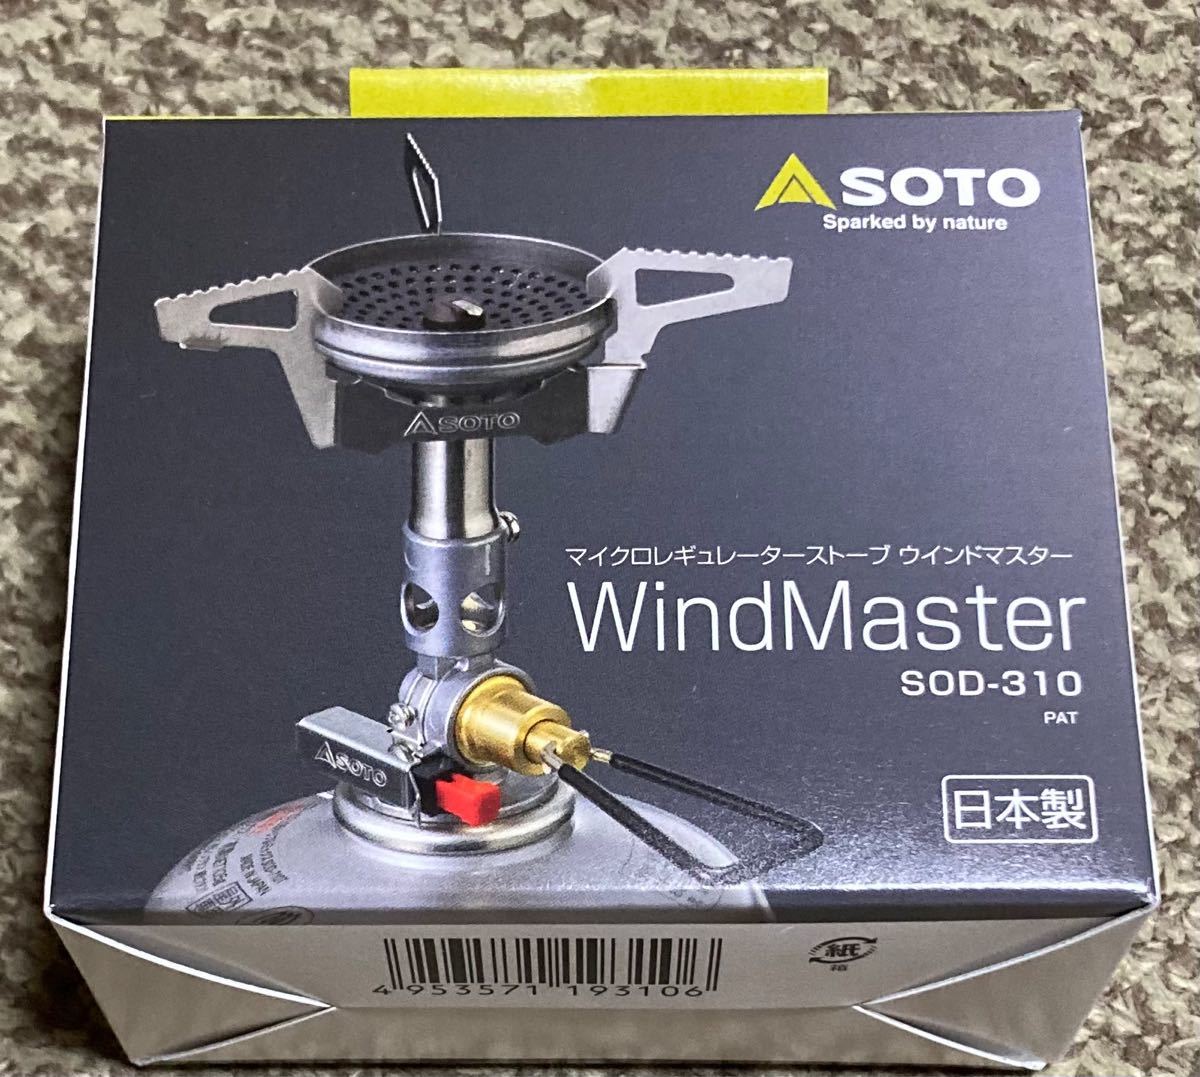 SOTO ウインドマスター SOD-310 マイクロレギュレーターストーブ 新富士バーナー